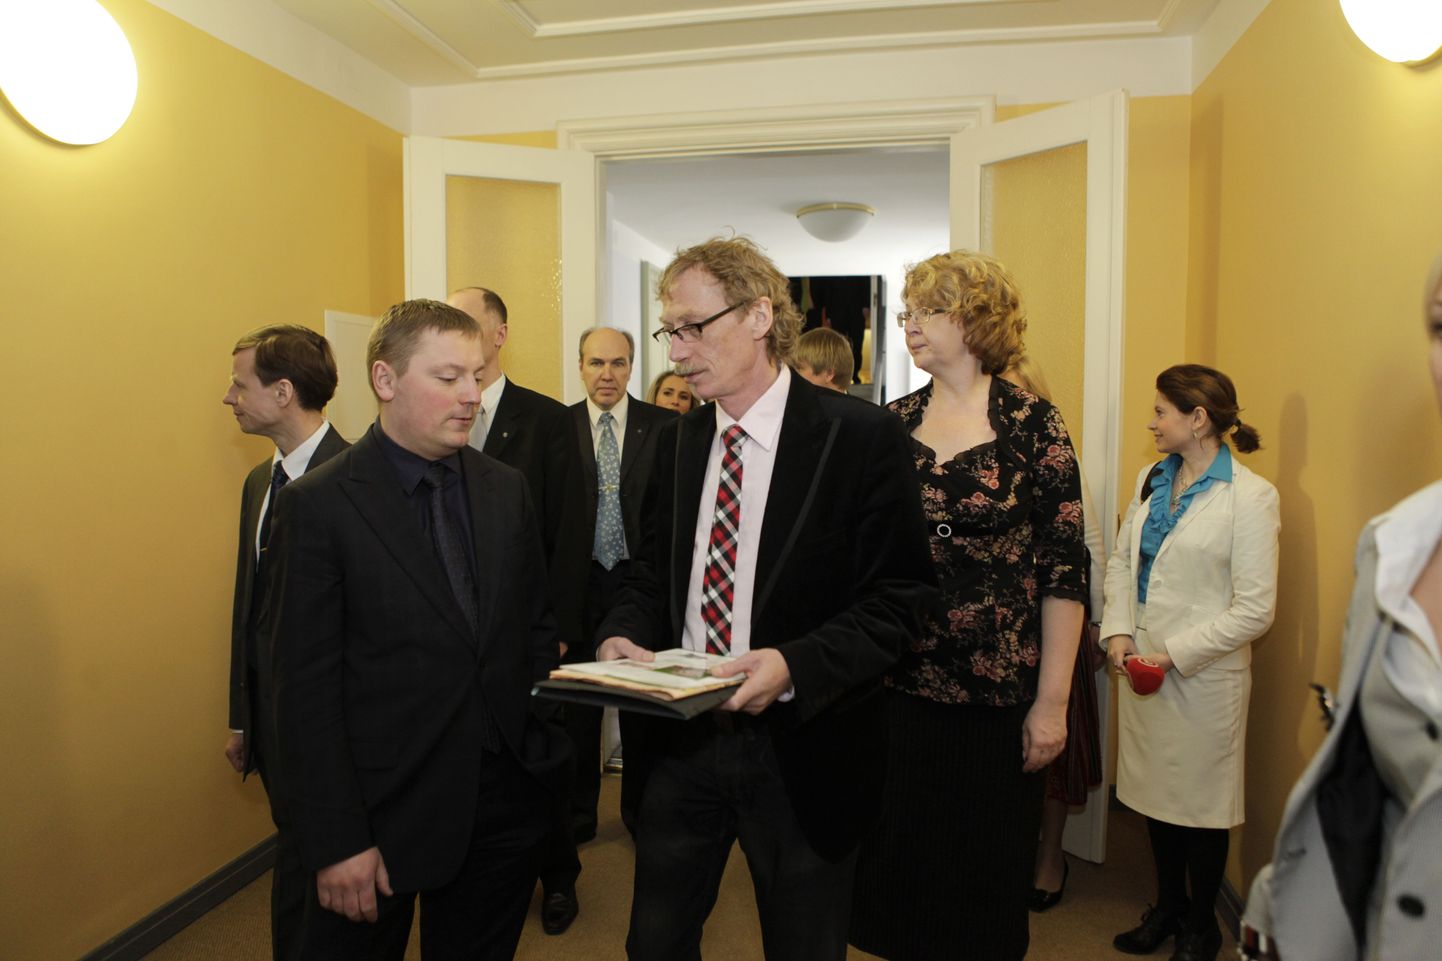 Uued riigikogu liikmed esimesel tööpäeval parlamendihoones ekskursioonil: esiplaanil Deniss Boroditš ja Viktor Vassiljev, tema selja taga Yana Toom.